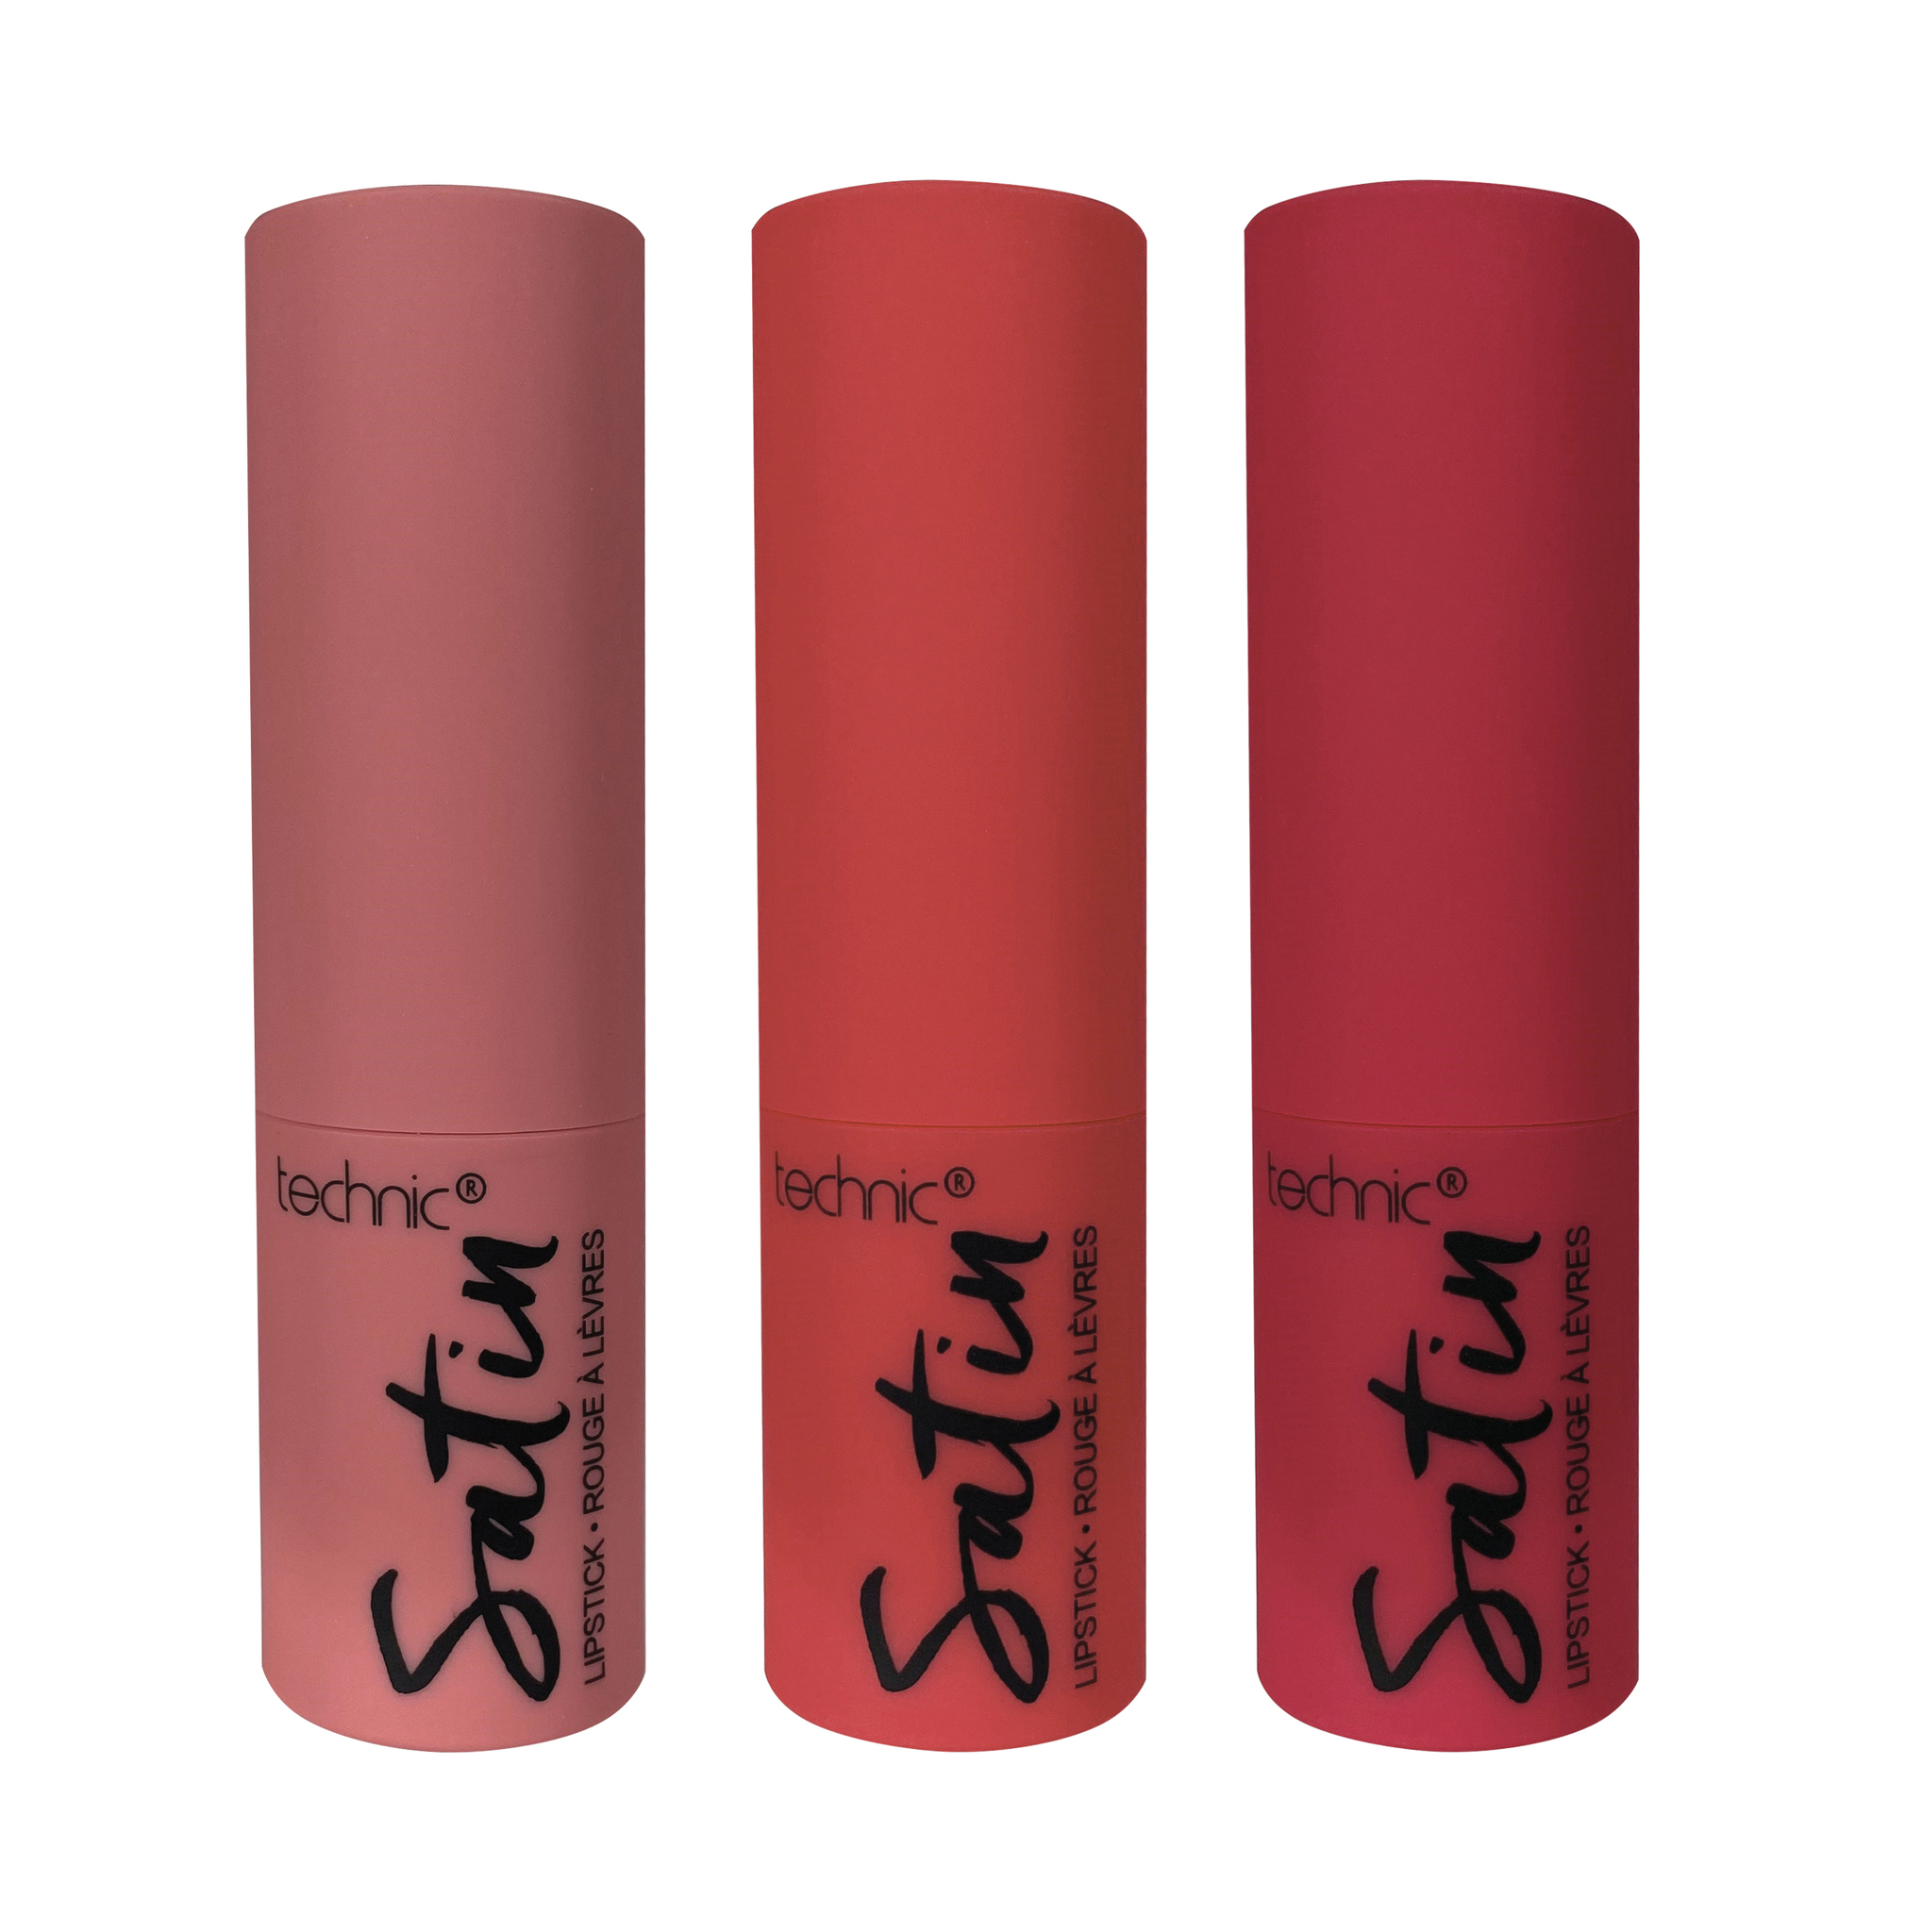 Technic - Satin Lipstick Set